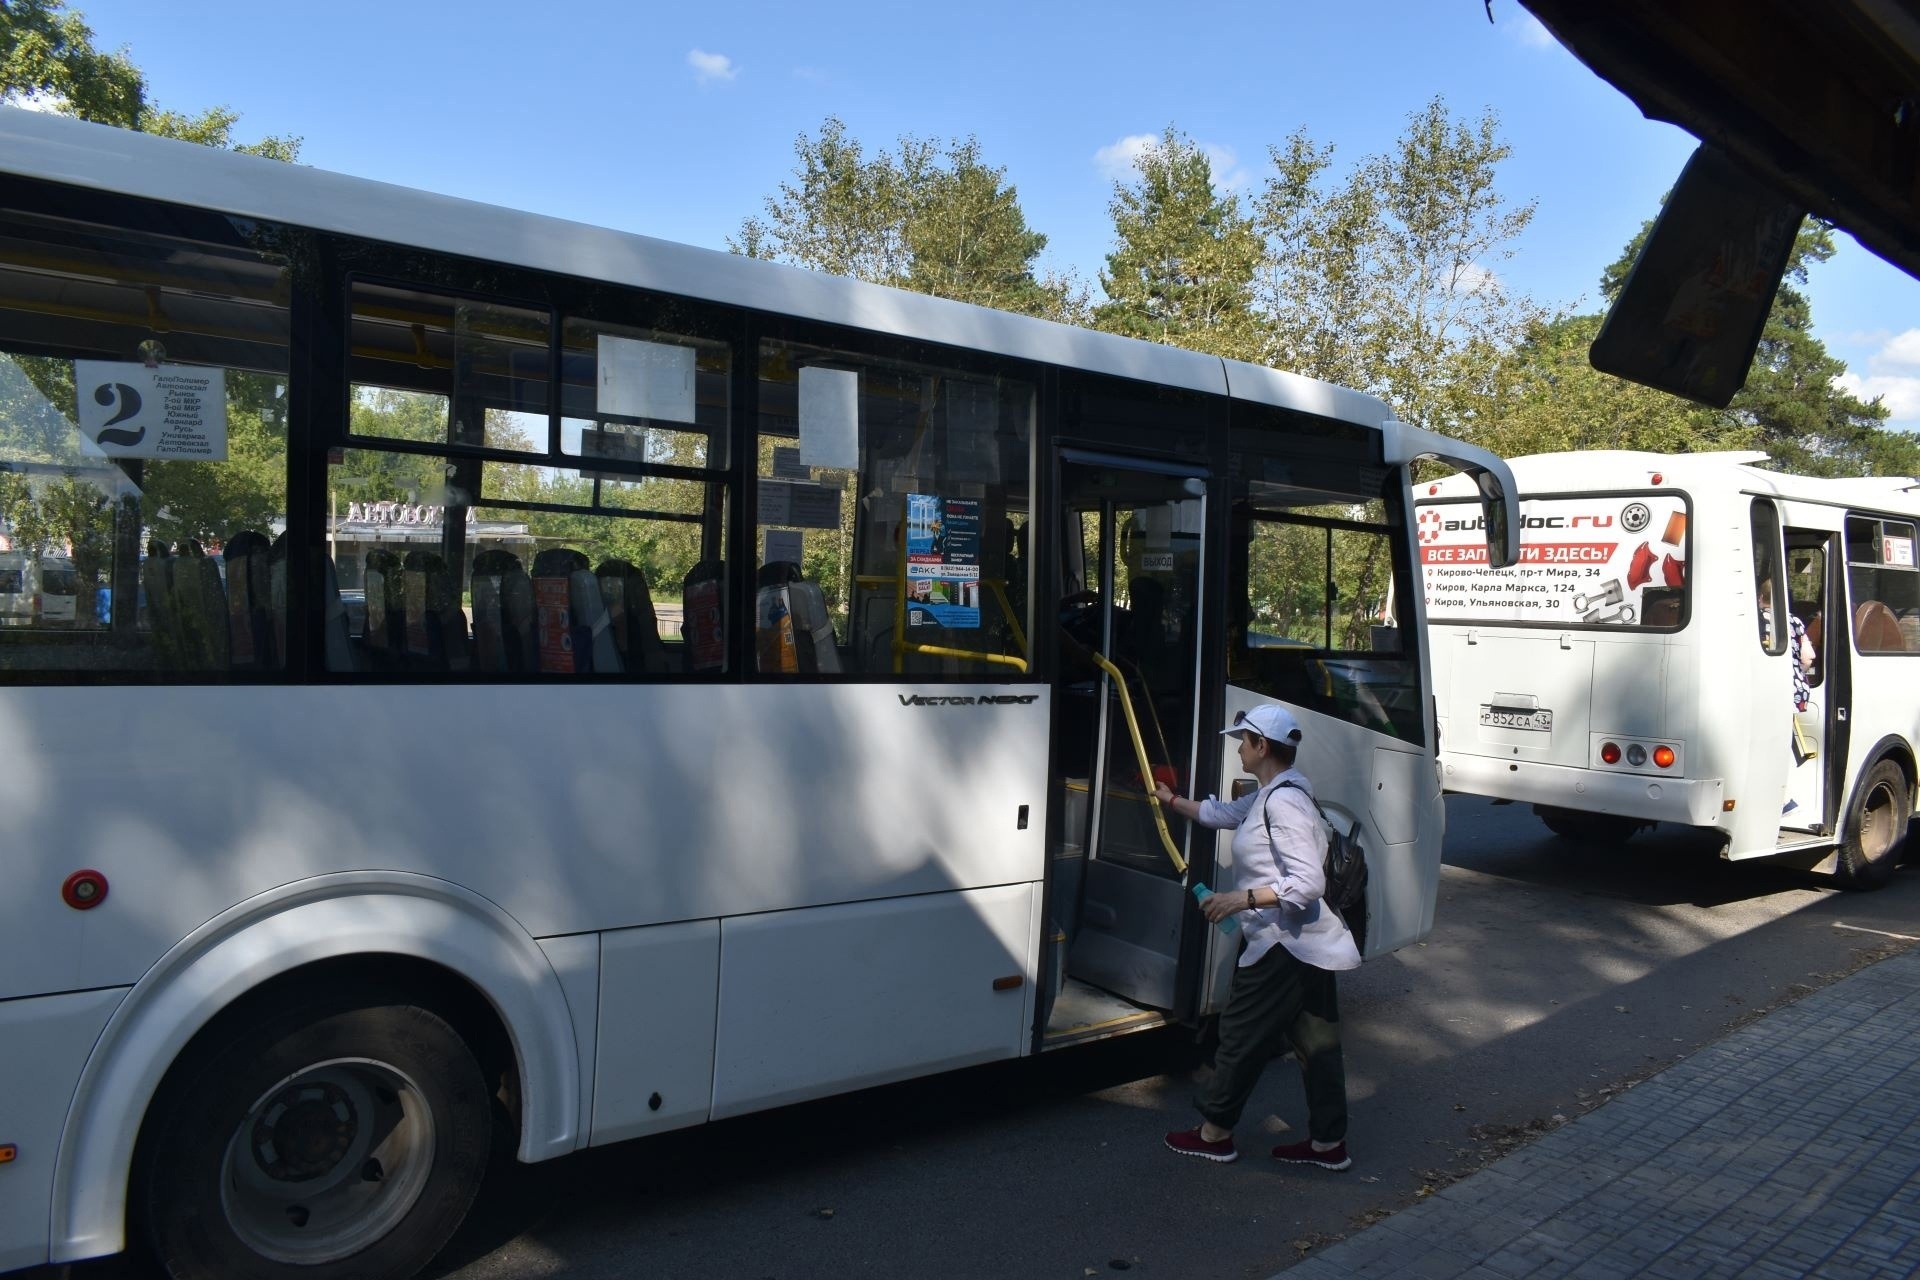 Жителям Кирово-Чепецка объяснили, почему они не могли проехать в автобусе за 32 рубля